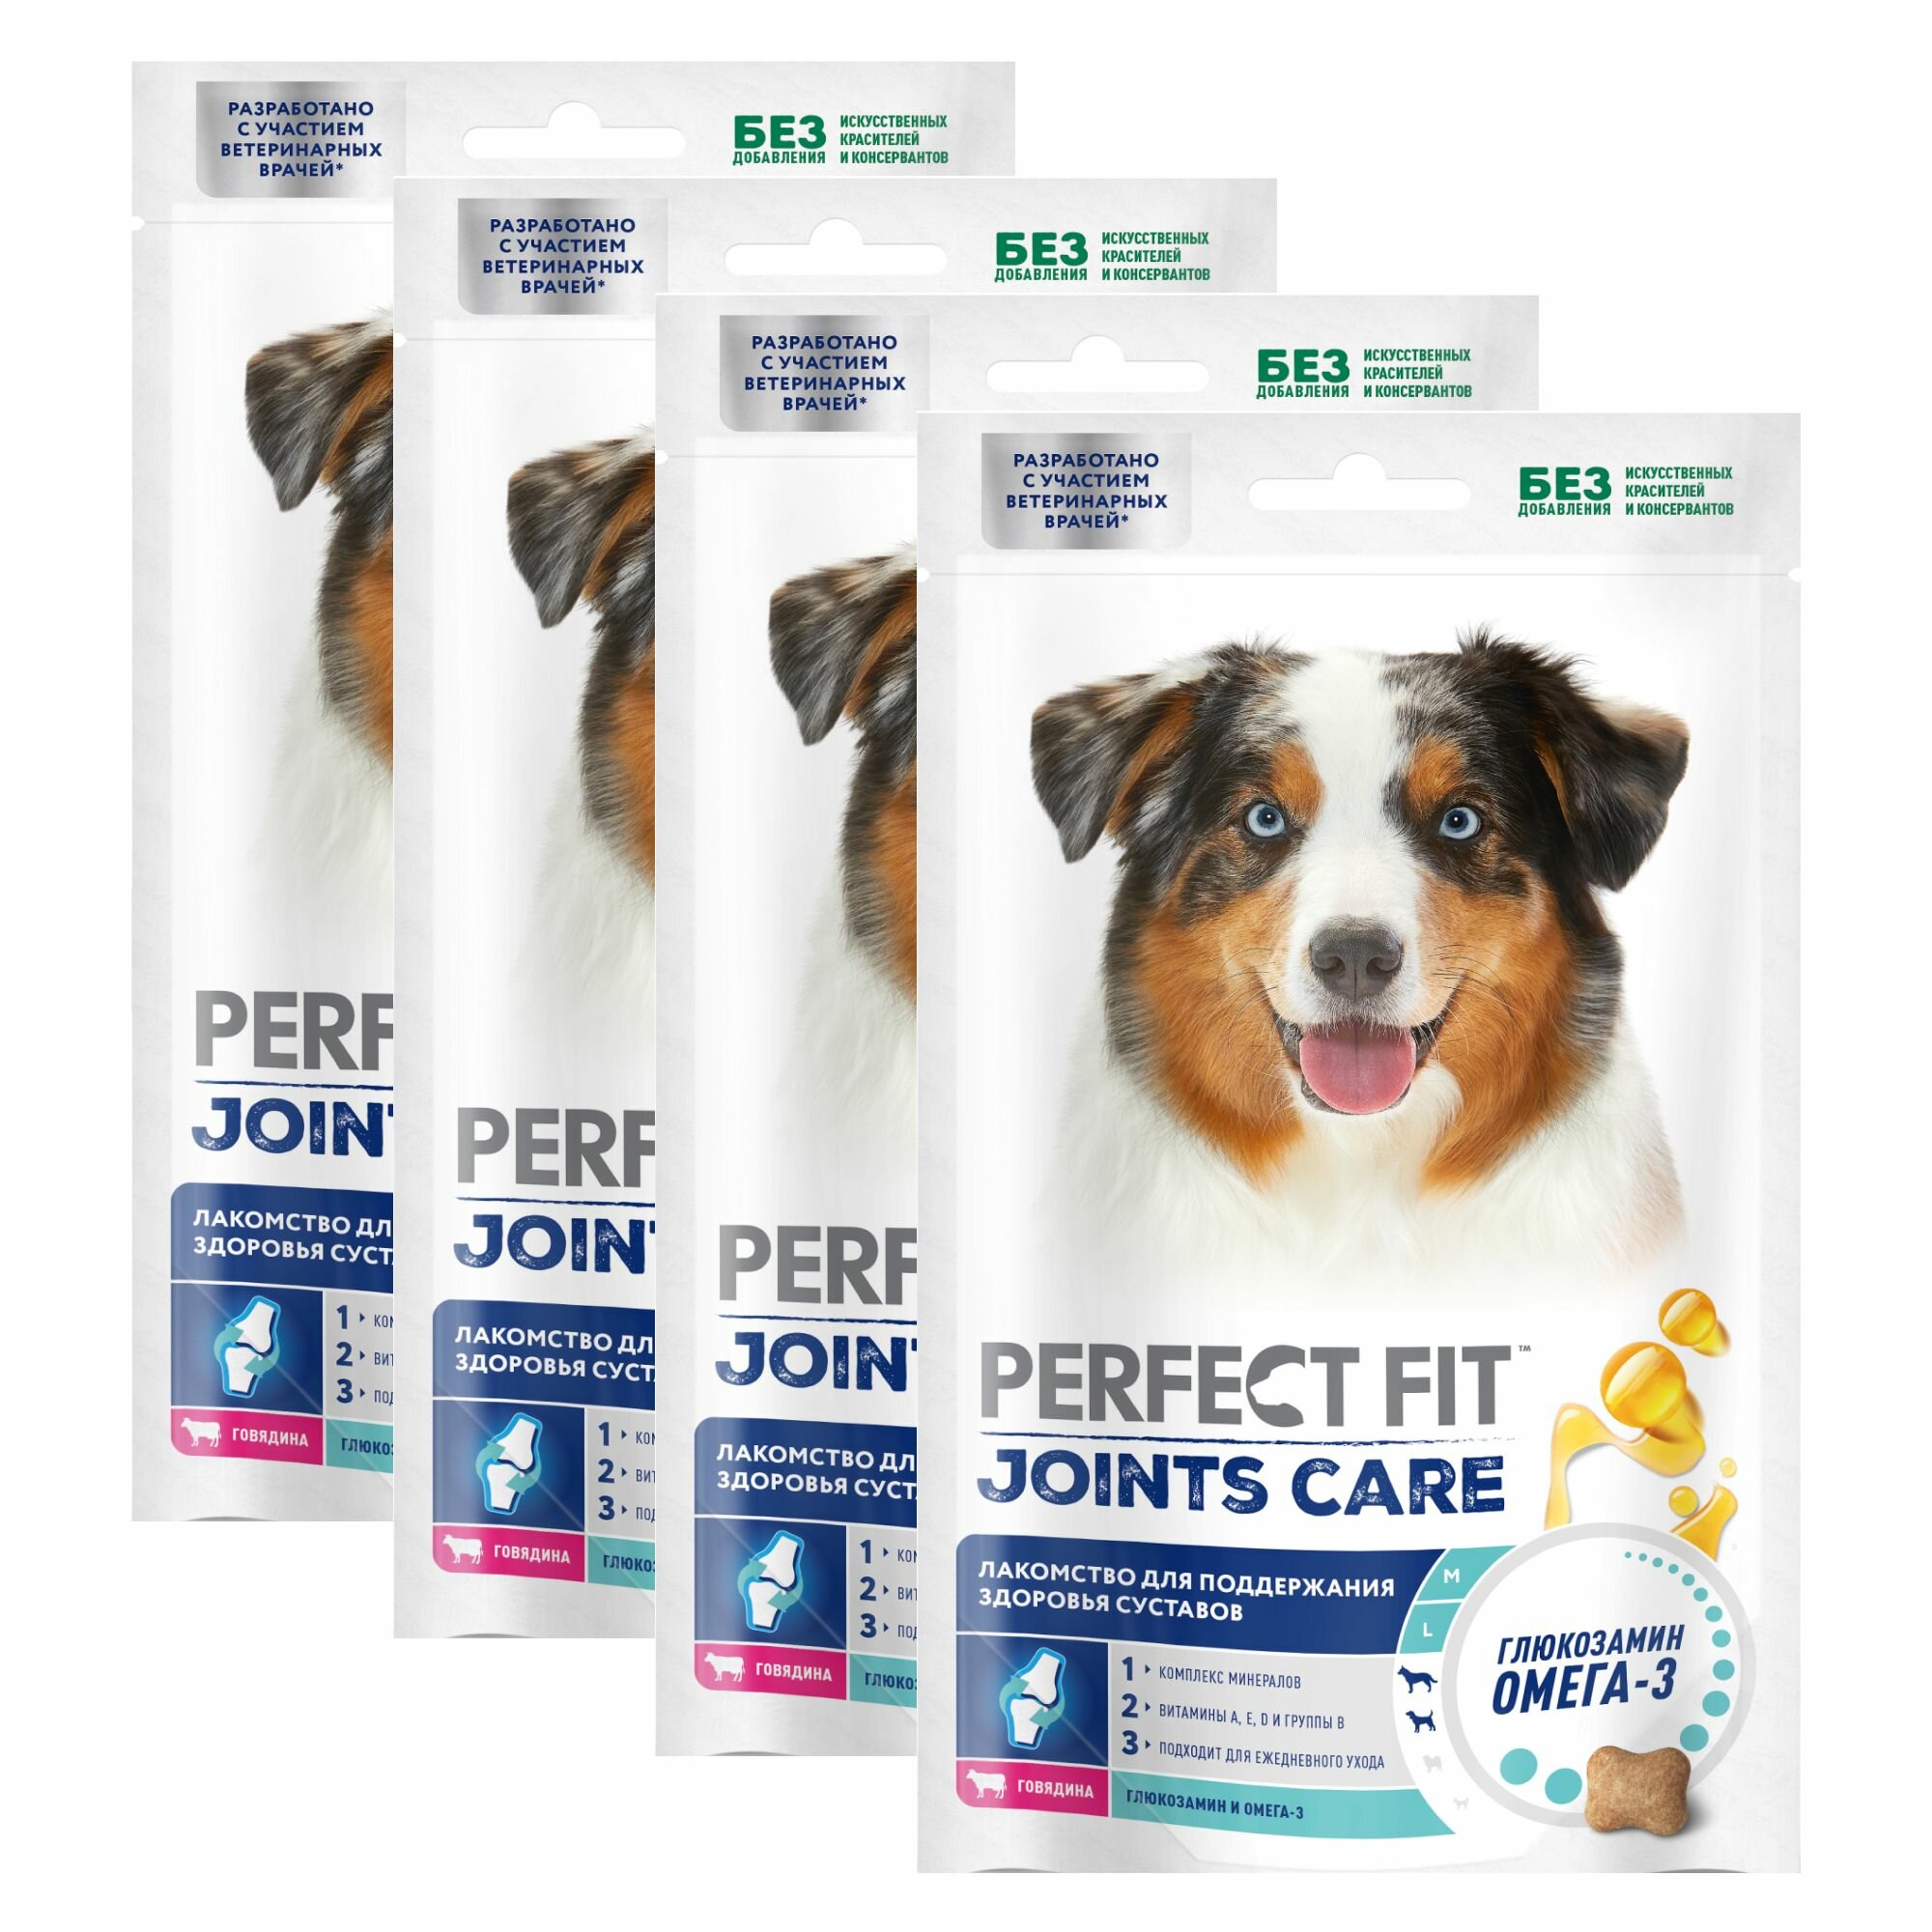 Perfect Fit Joints Care лакомство для поддержания здоровья суставов собак средних и крупных пород (Говядина, 130 г.) - фото №2